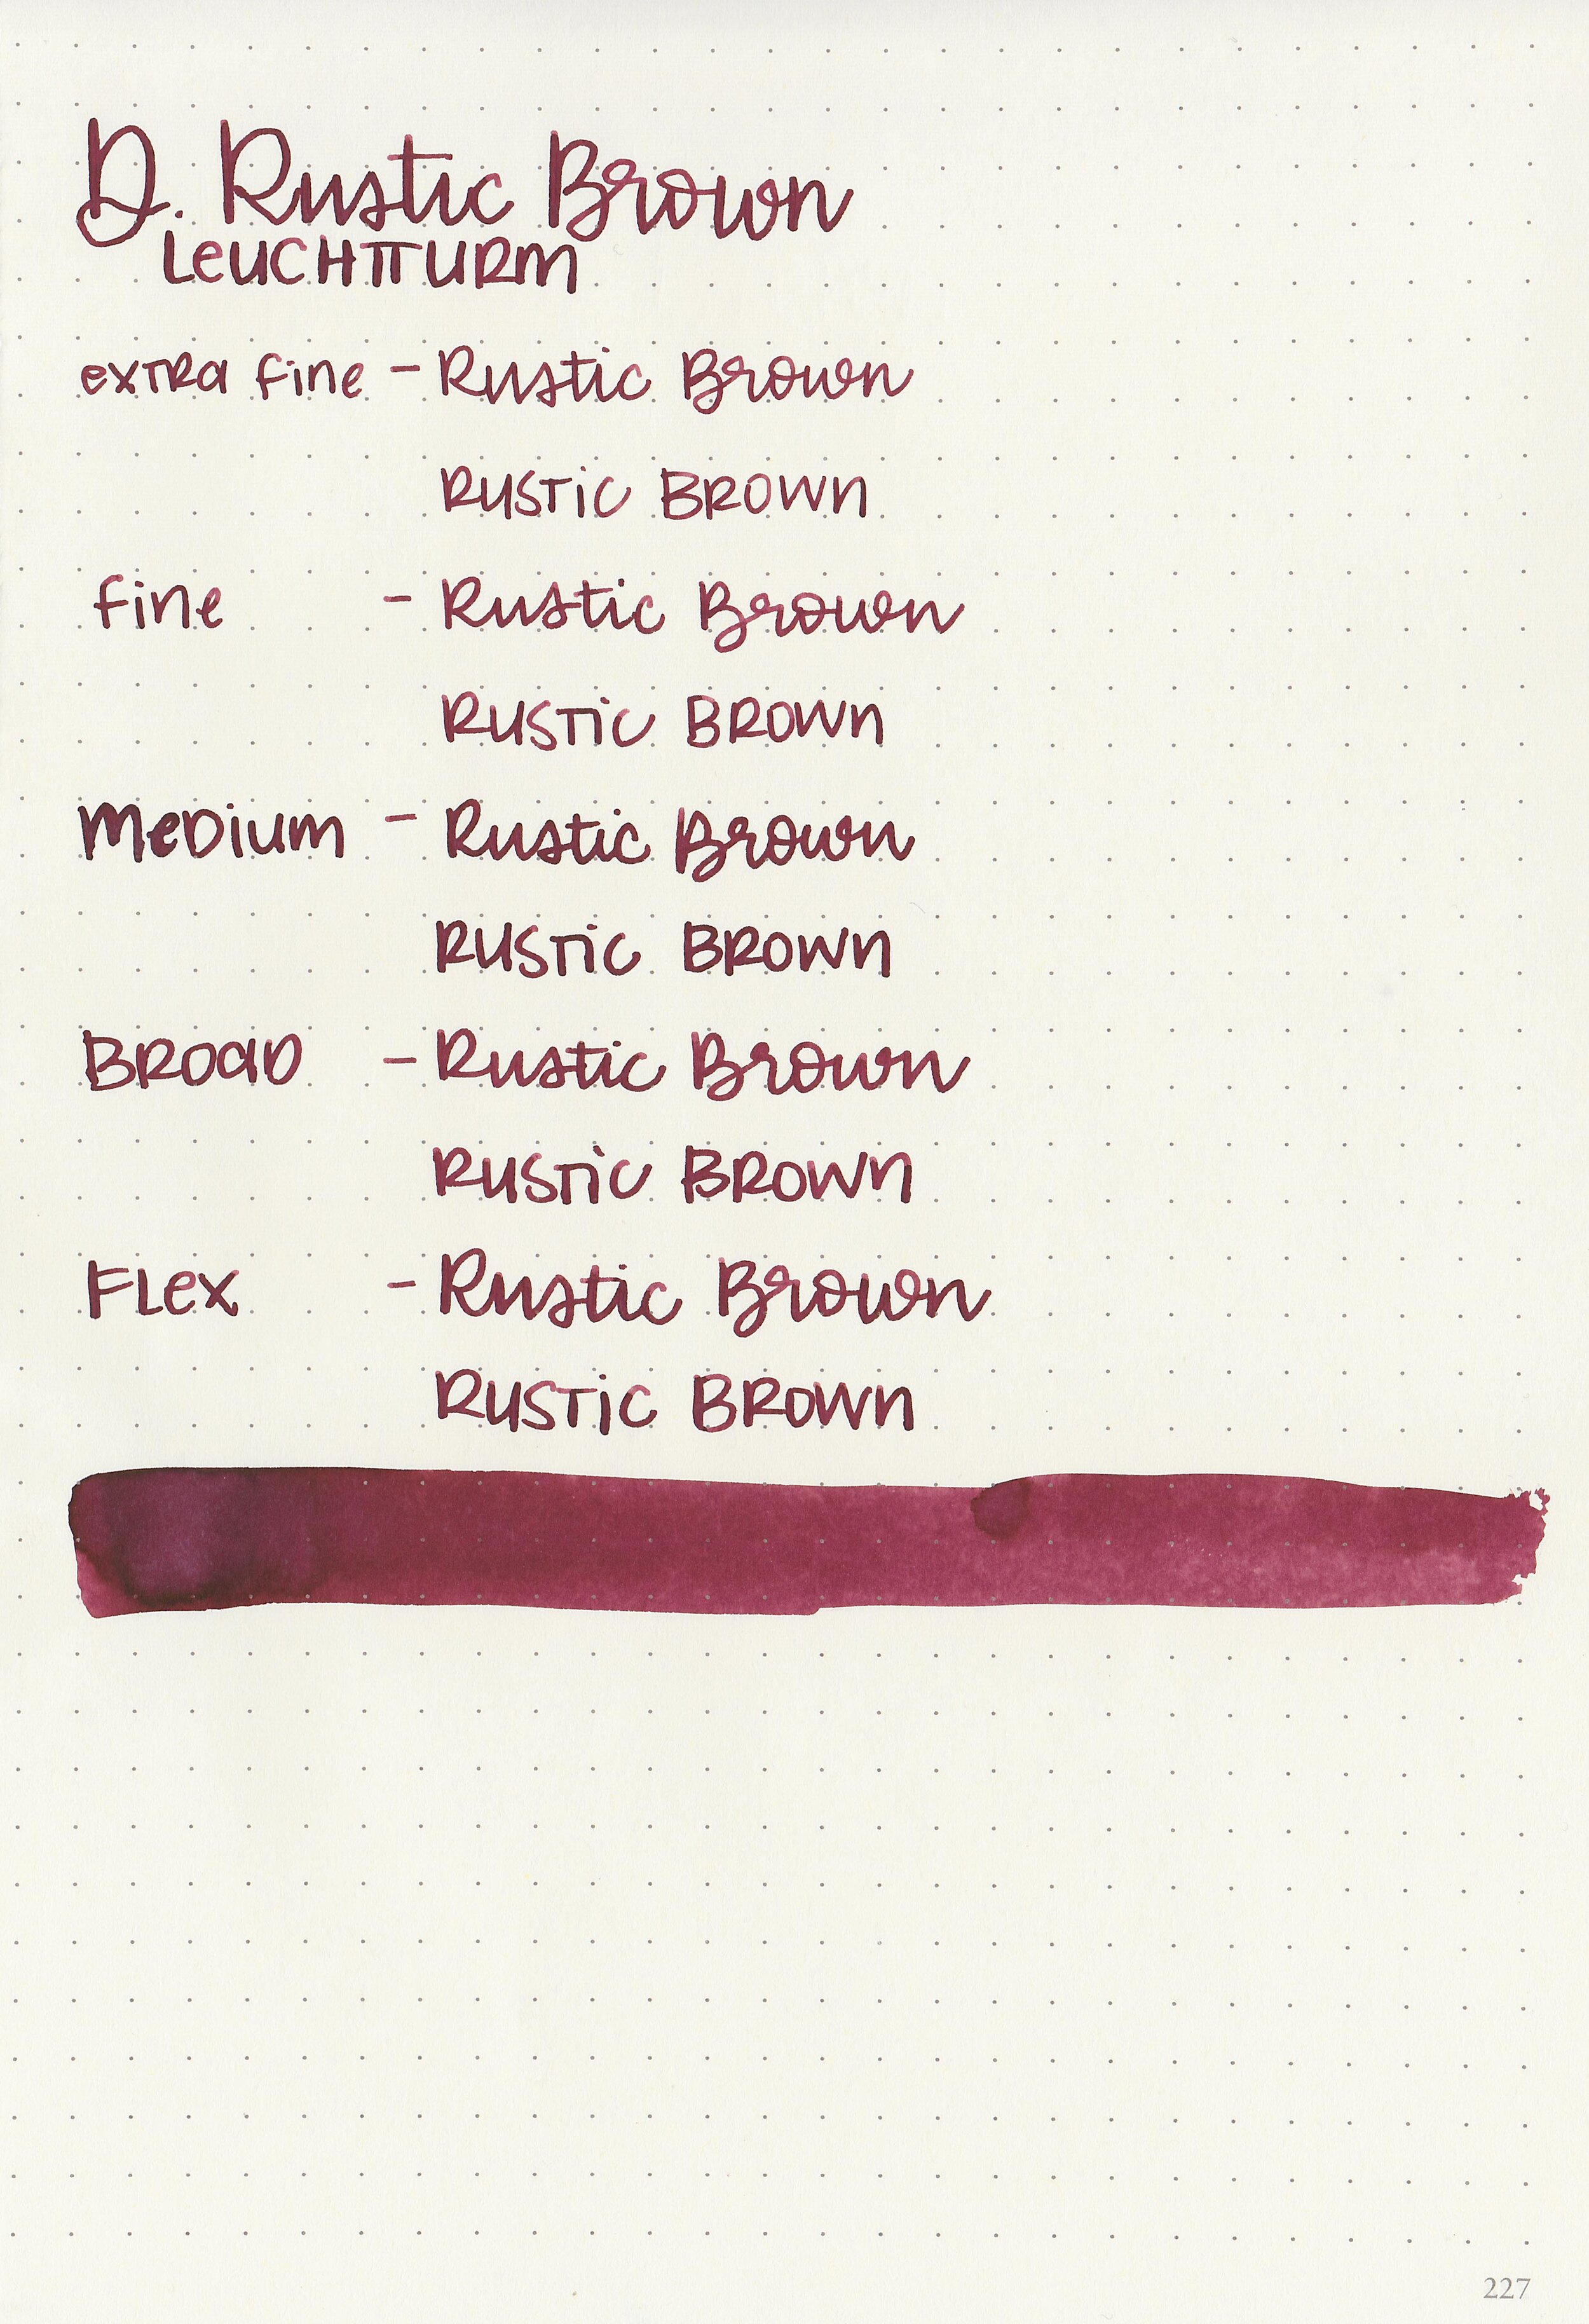 d-rustic-brown-9.jpg